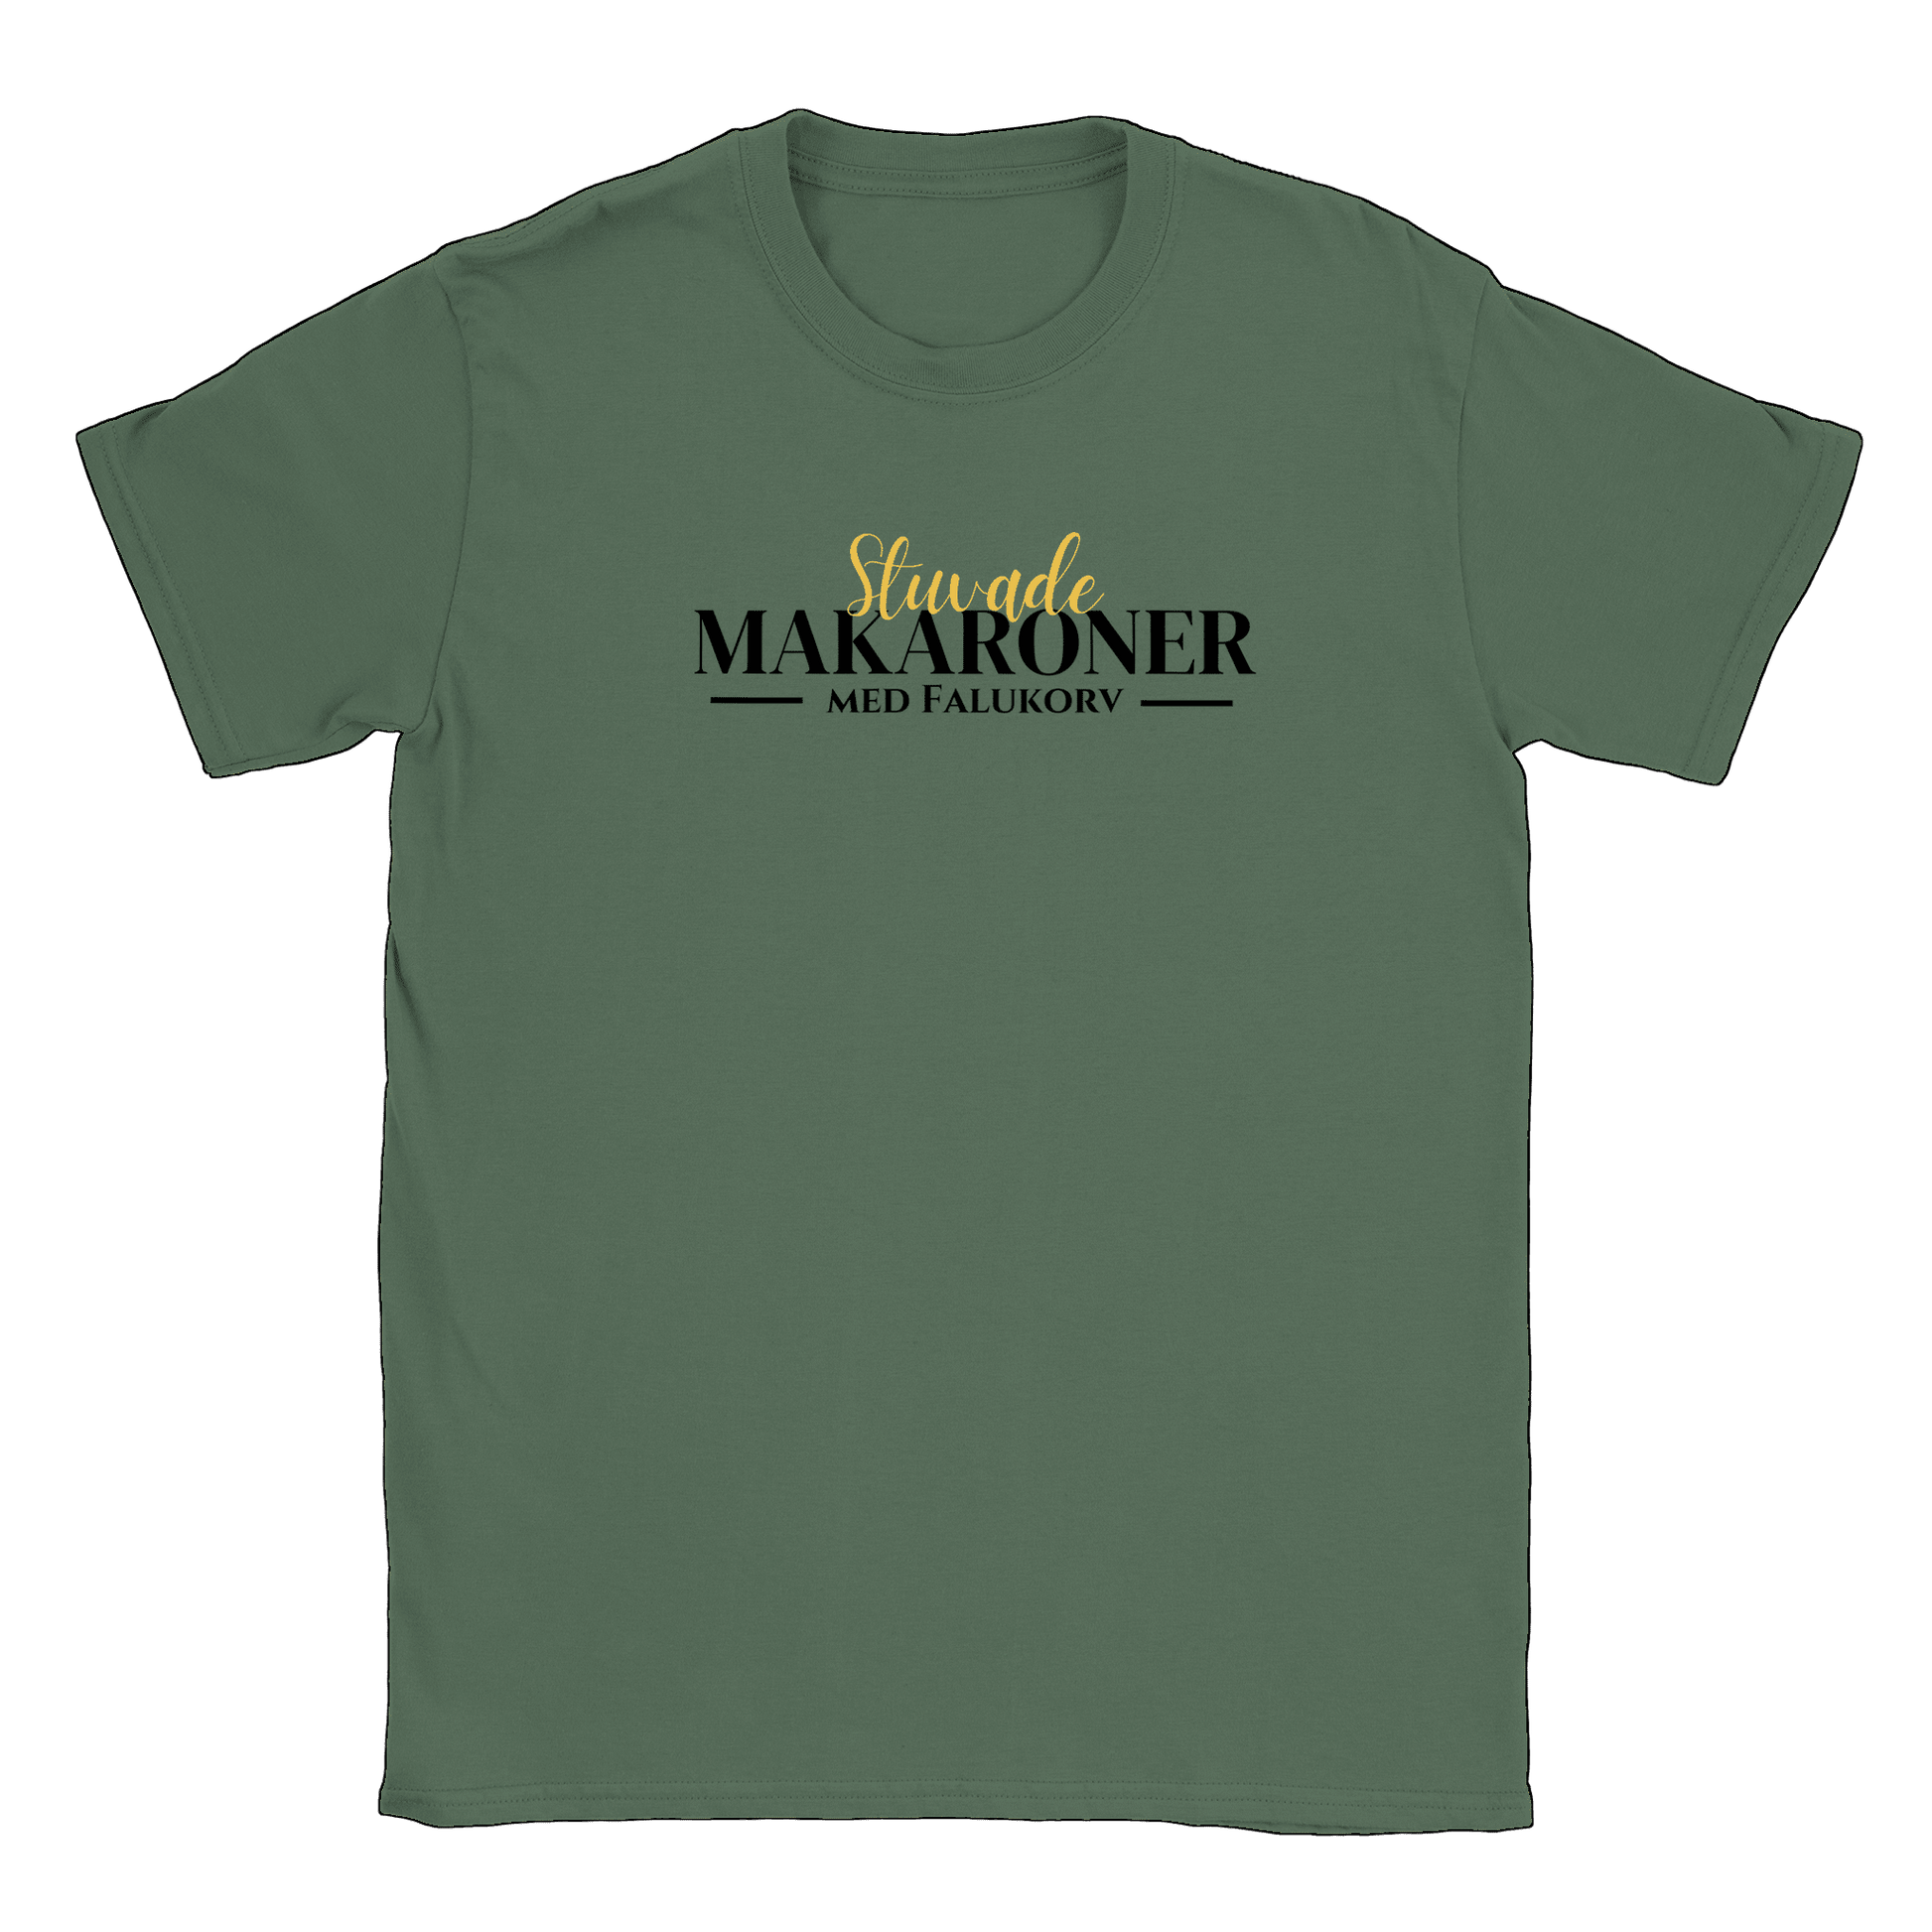 Stuvade makaroner med falukorv - T-shirt Military Green